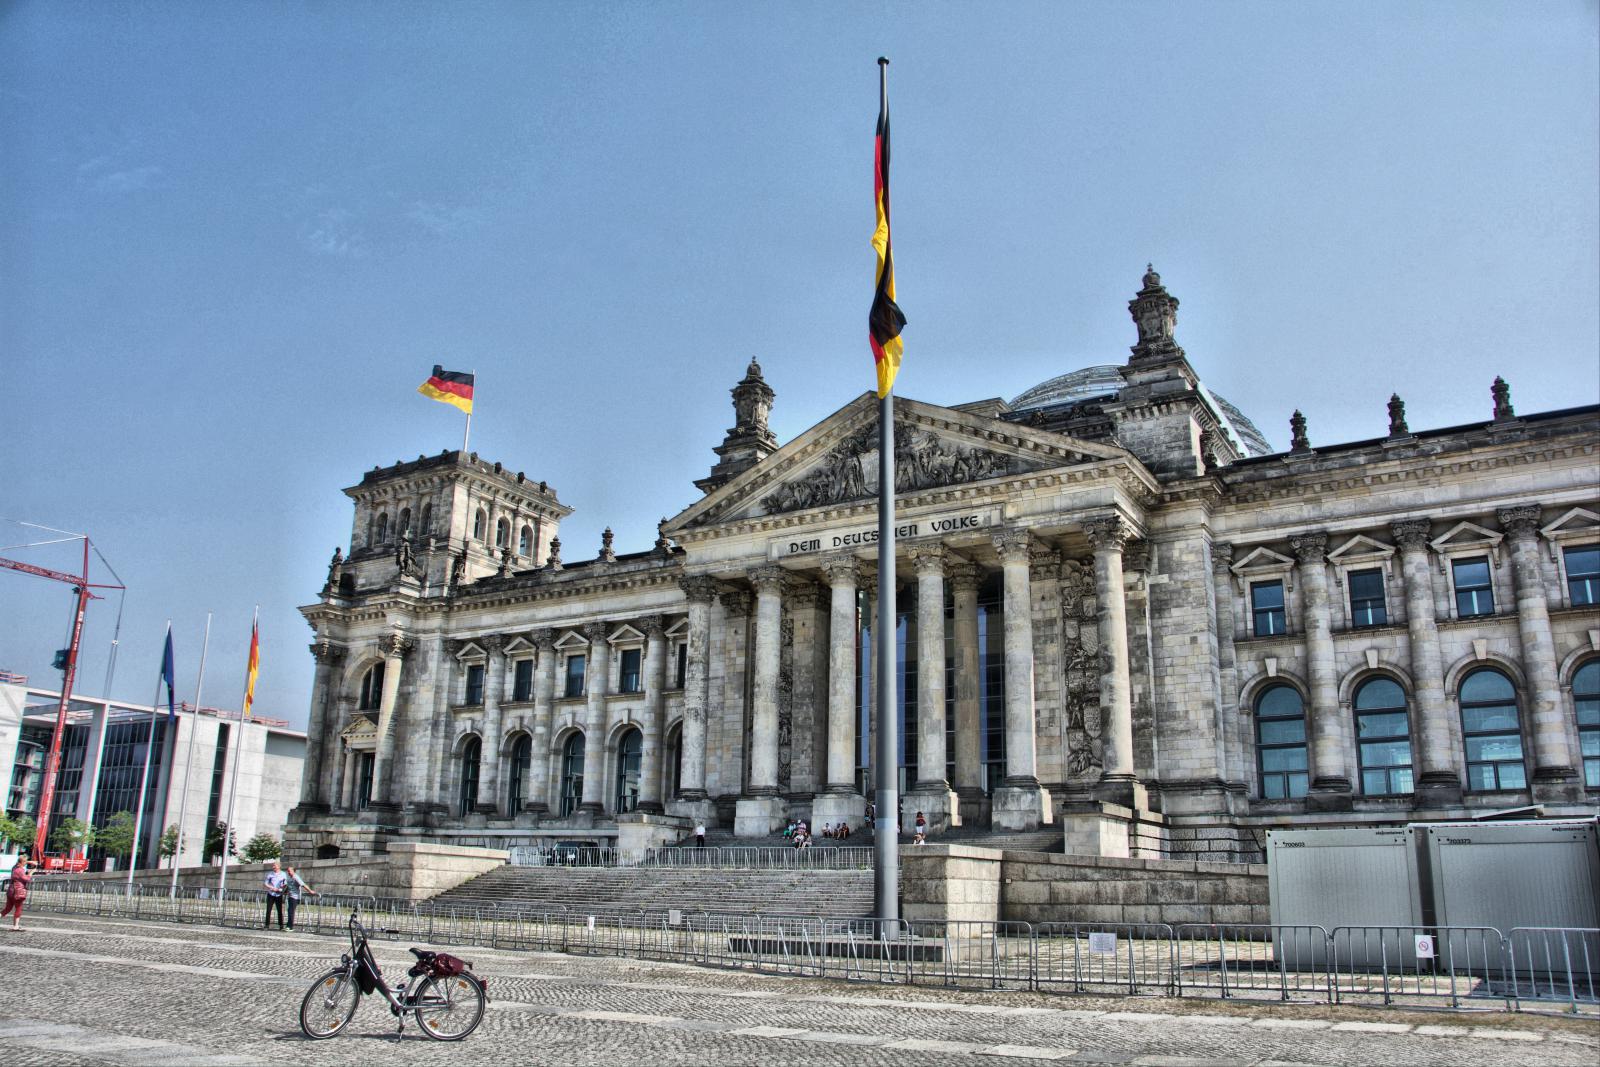 Здание Рейхстага - историческое здание в Берлине, где в 1894-1933 годах заседал рейхстаг Германской империи и рейхстаг Веймарской республики, а с 1999 года размещается бундестаг.